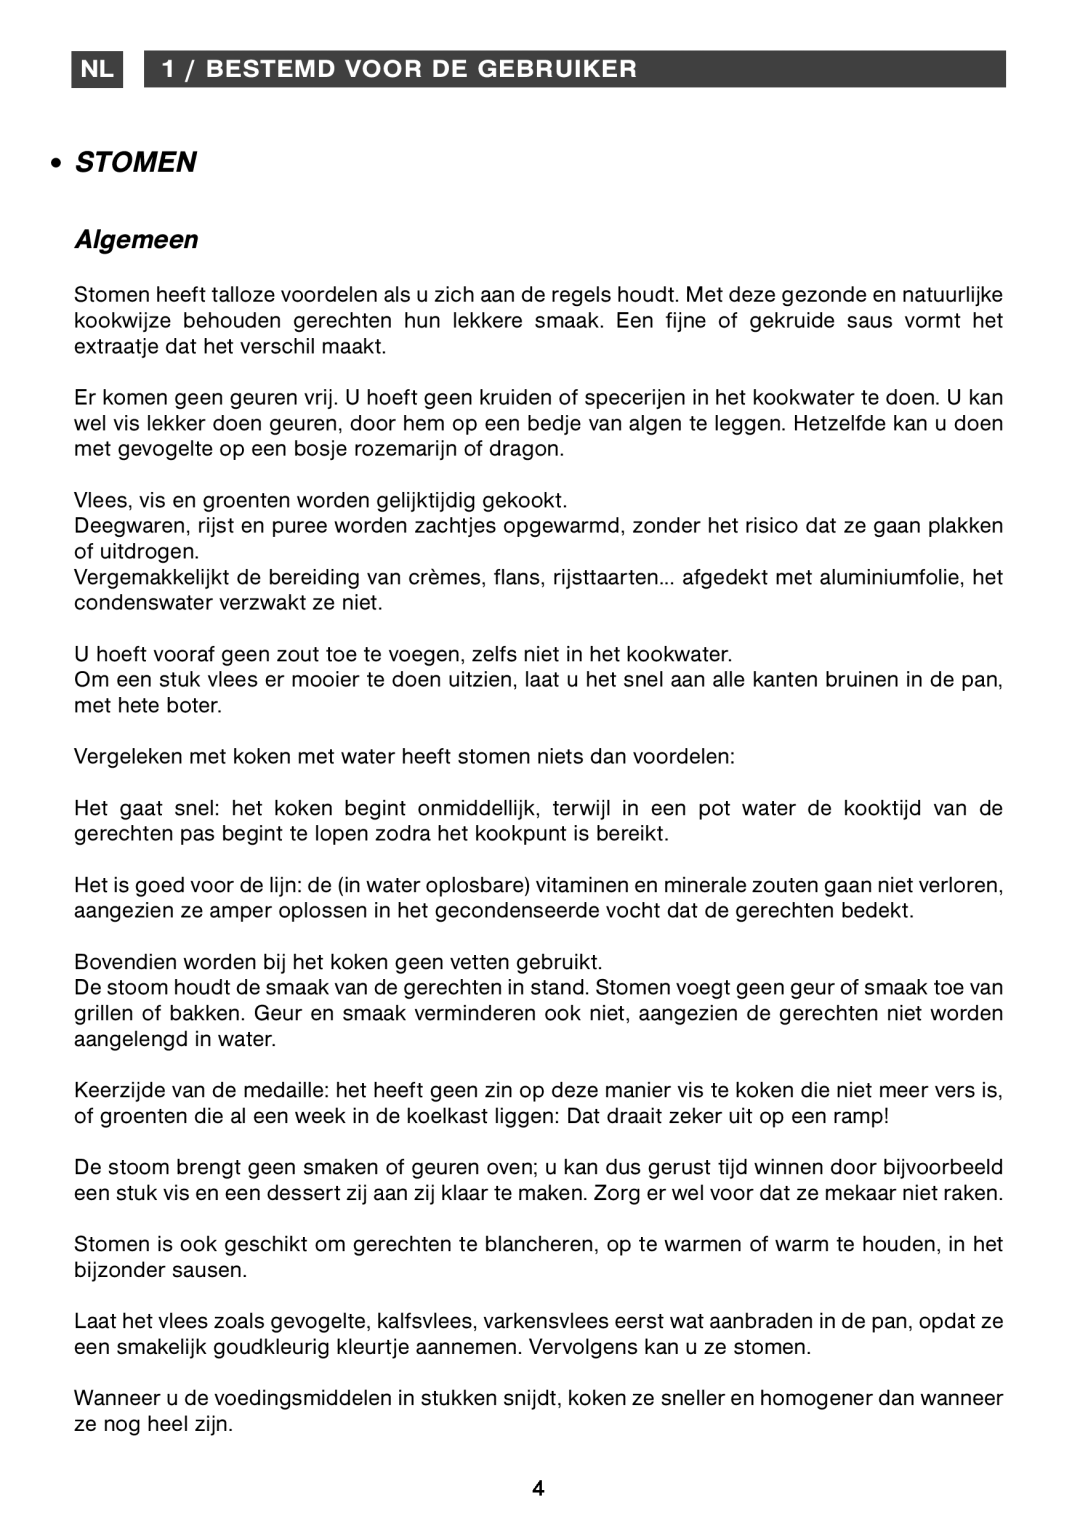 Smeg Four Oven manual Stomen, Algemeen, NL 1 / BESTEMD VOOR DE GEBRUIKER 